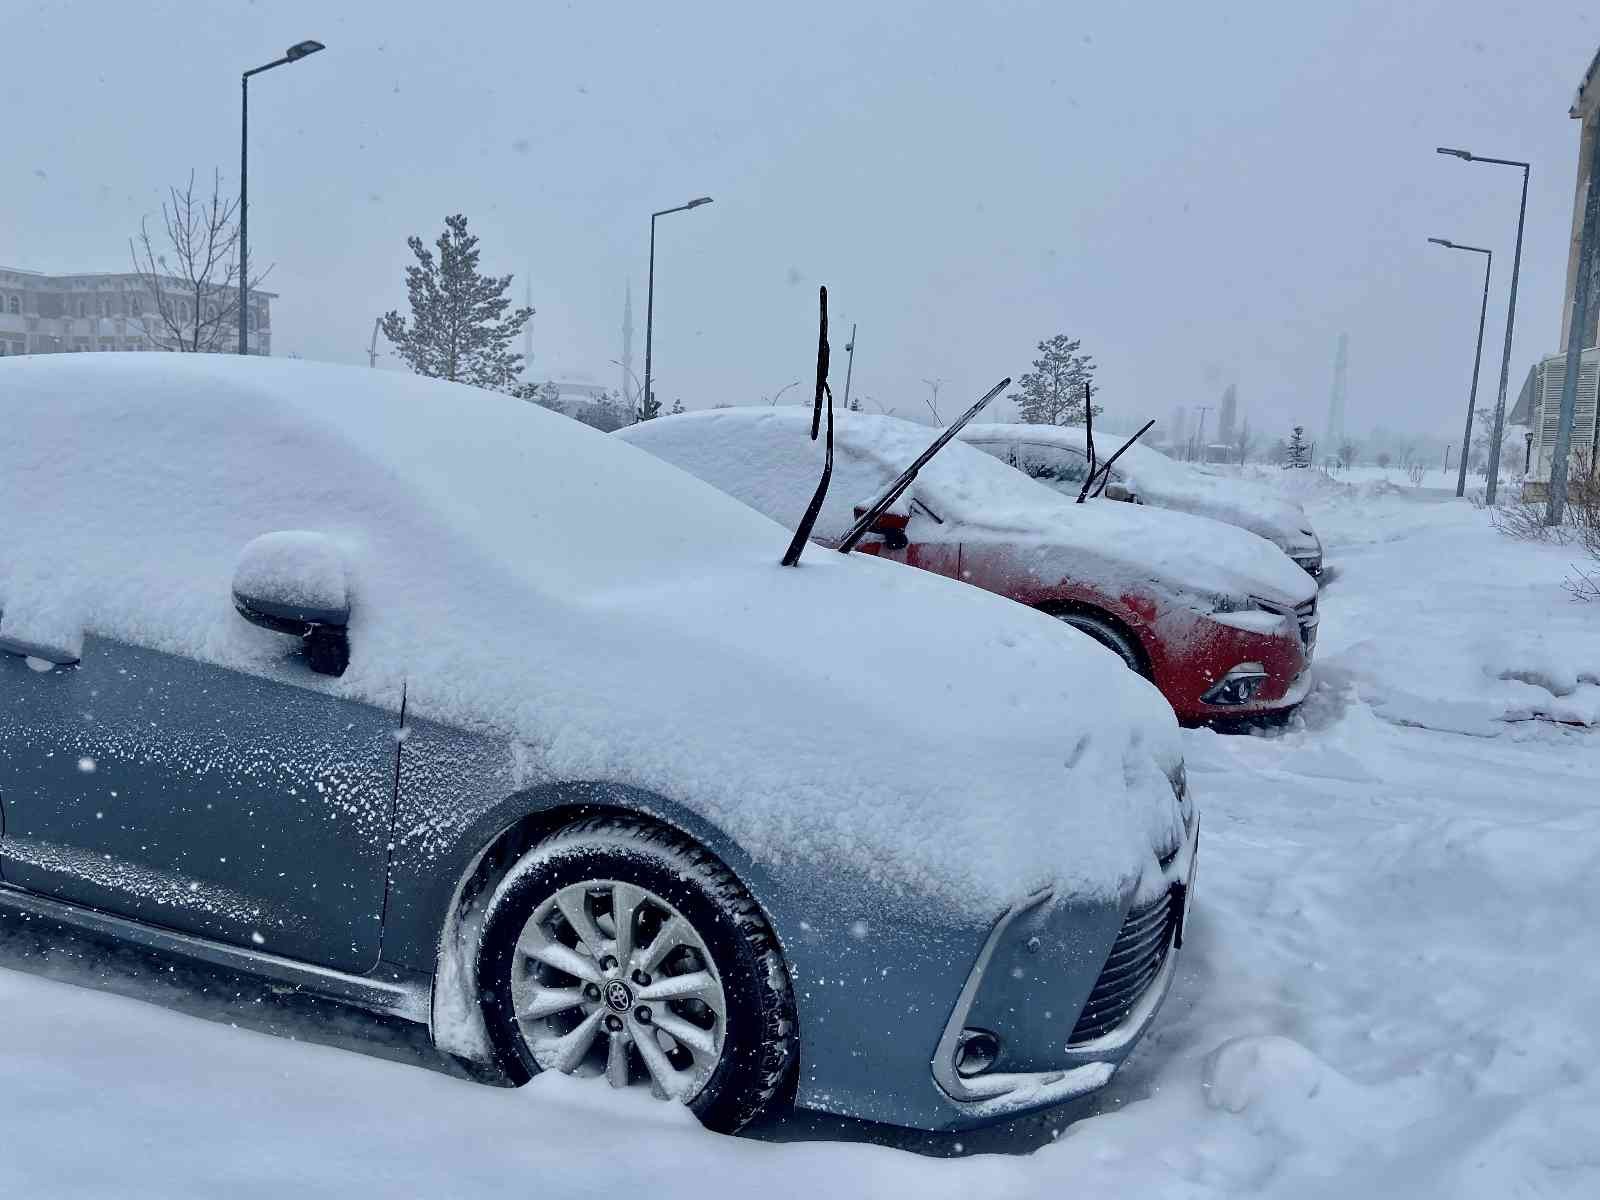 Ağrı’da 191 köy yolu kar nedeniyle ulaşıma kapandı #agri